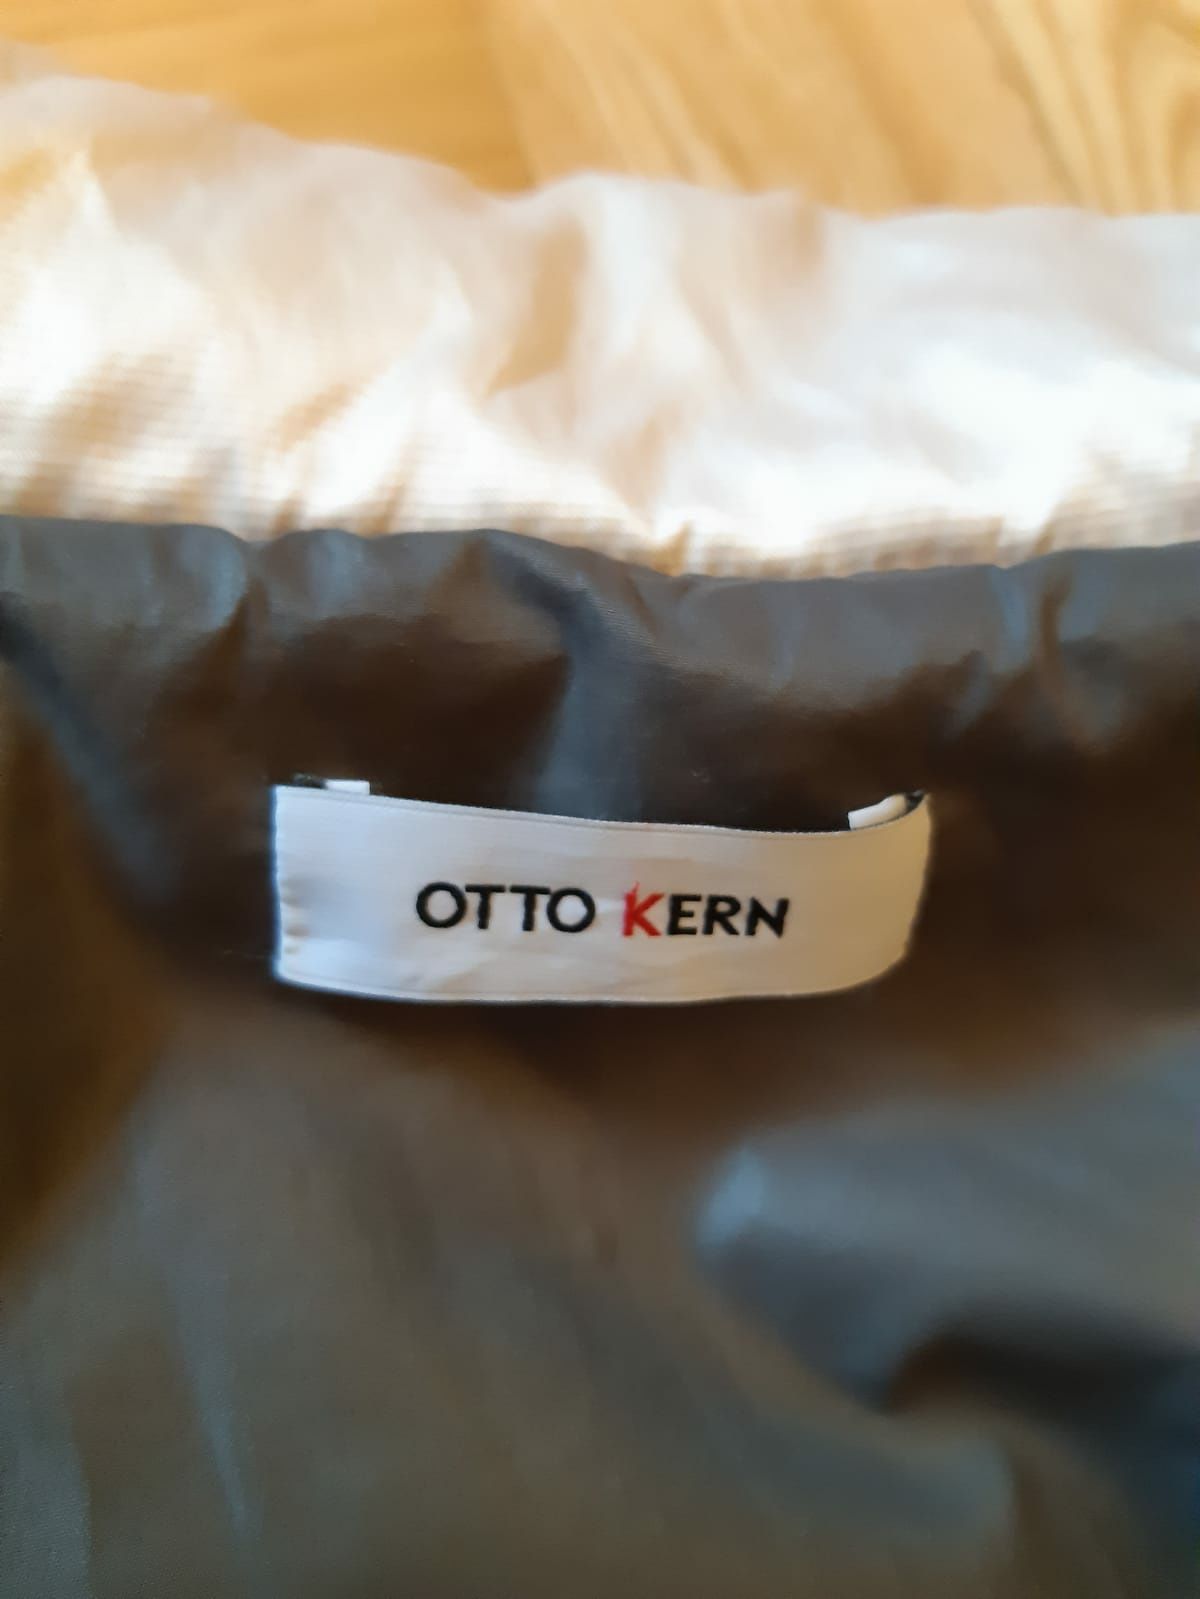 Kurtka beżowa Otto Kern roz 38 super jakość